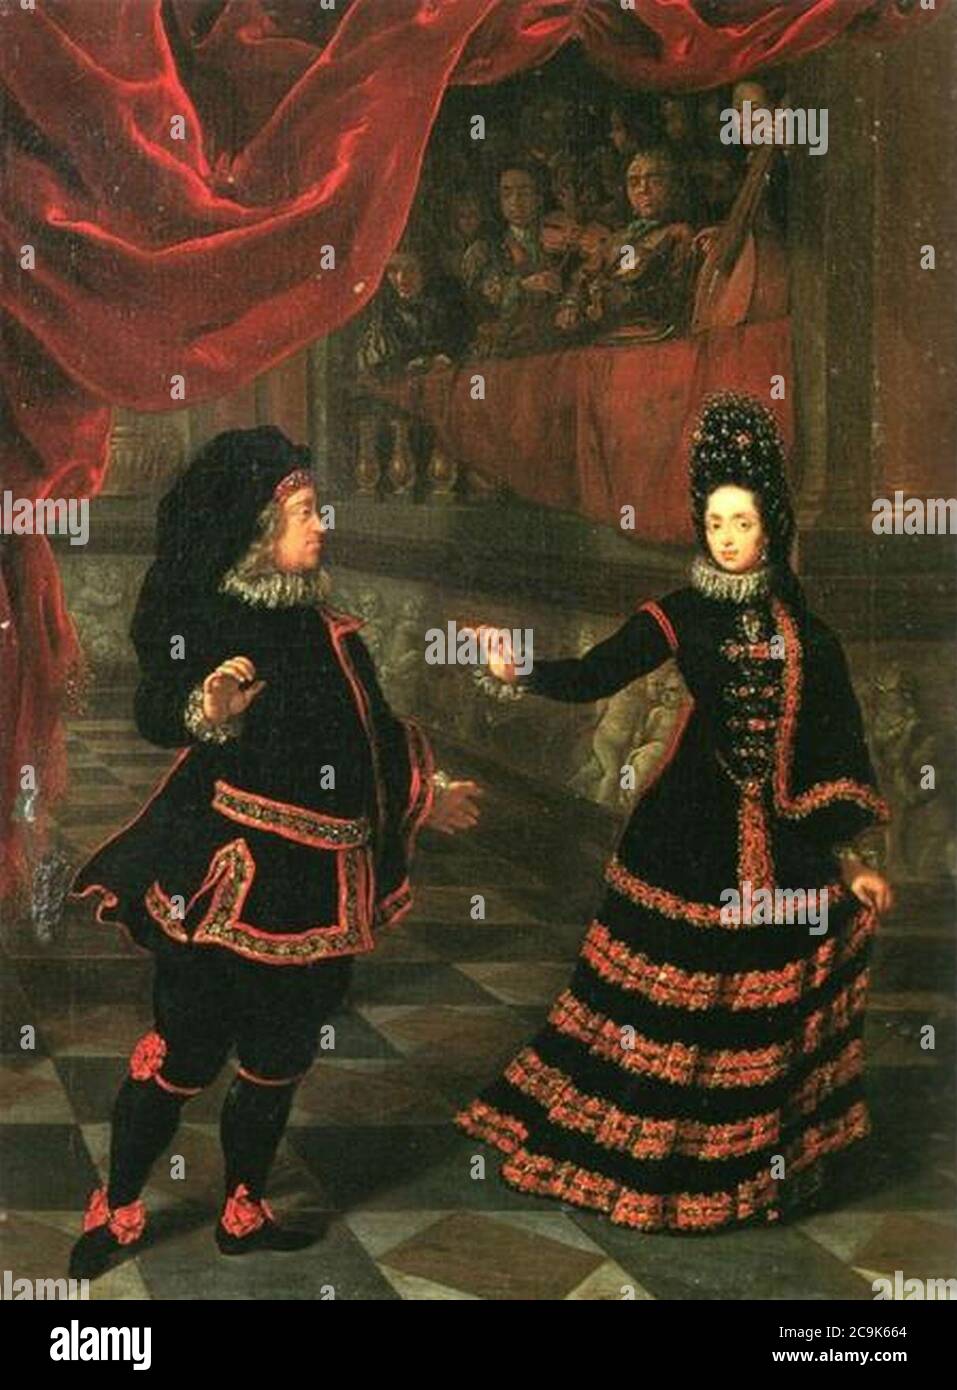 Jan Frans van Douven, Das Kurfürstenpaar im spanischen Kostüm bei Tanz, 1695. Foto Stock